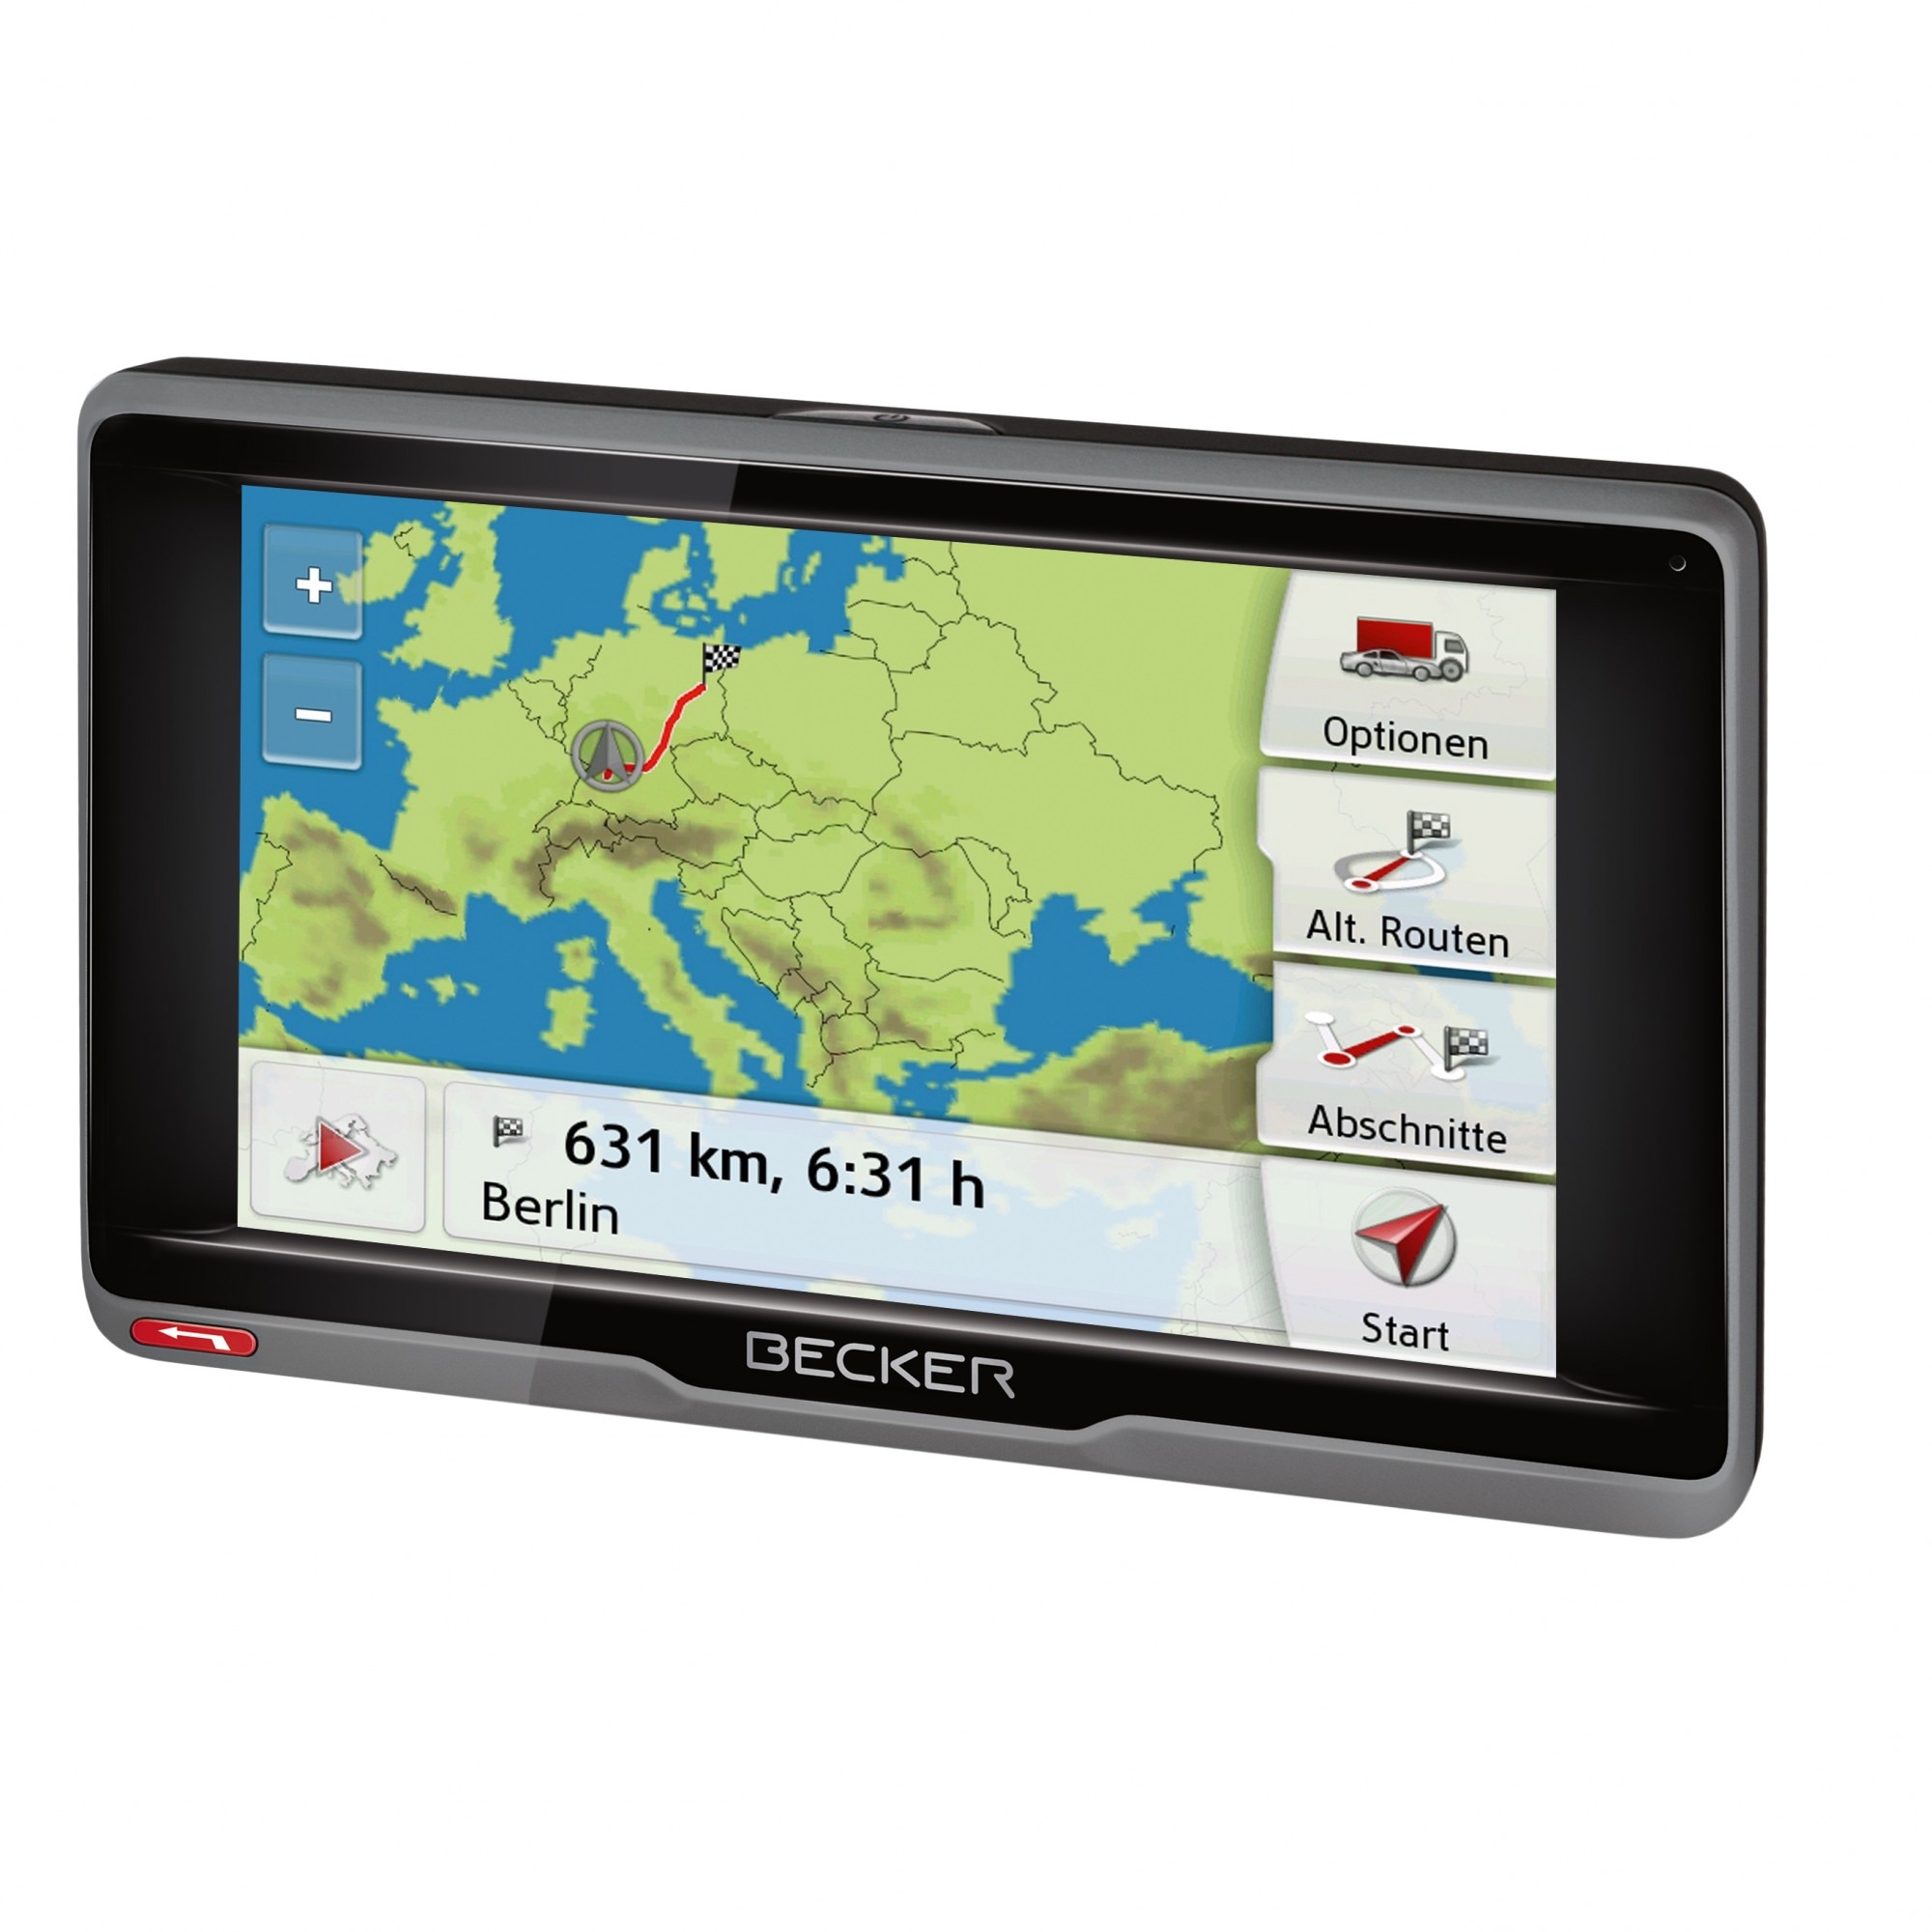 Harti GPS - Harti - Harti IGO - Descarca Harti - Harti noi Europa